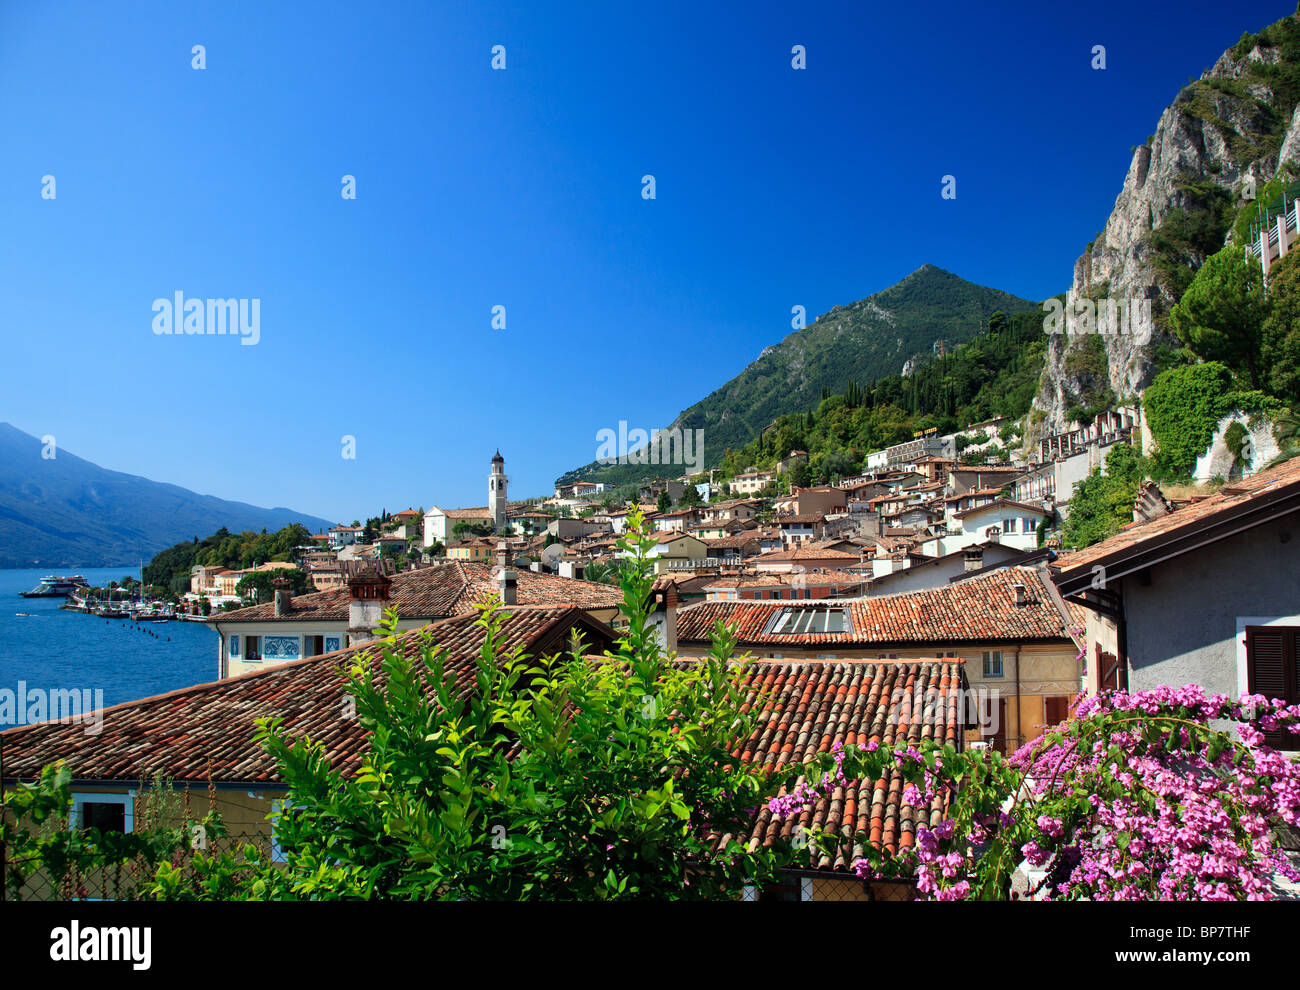 Blick auf den Gardasee, Italien mit Blumen die Gestaltung der Dächer des Gardasees Stadt Limone am Gardasee, Lombardei, Italien Stockfoto